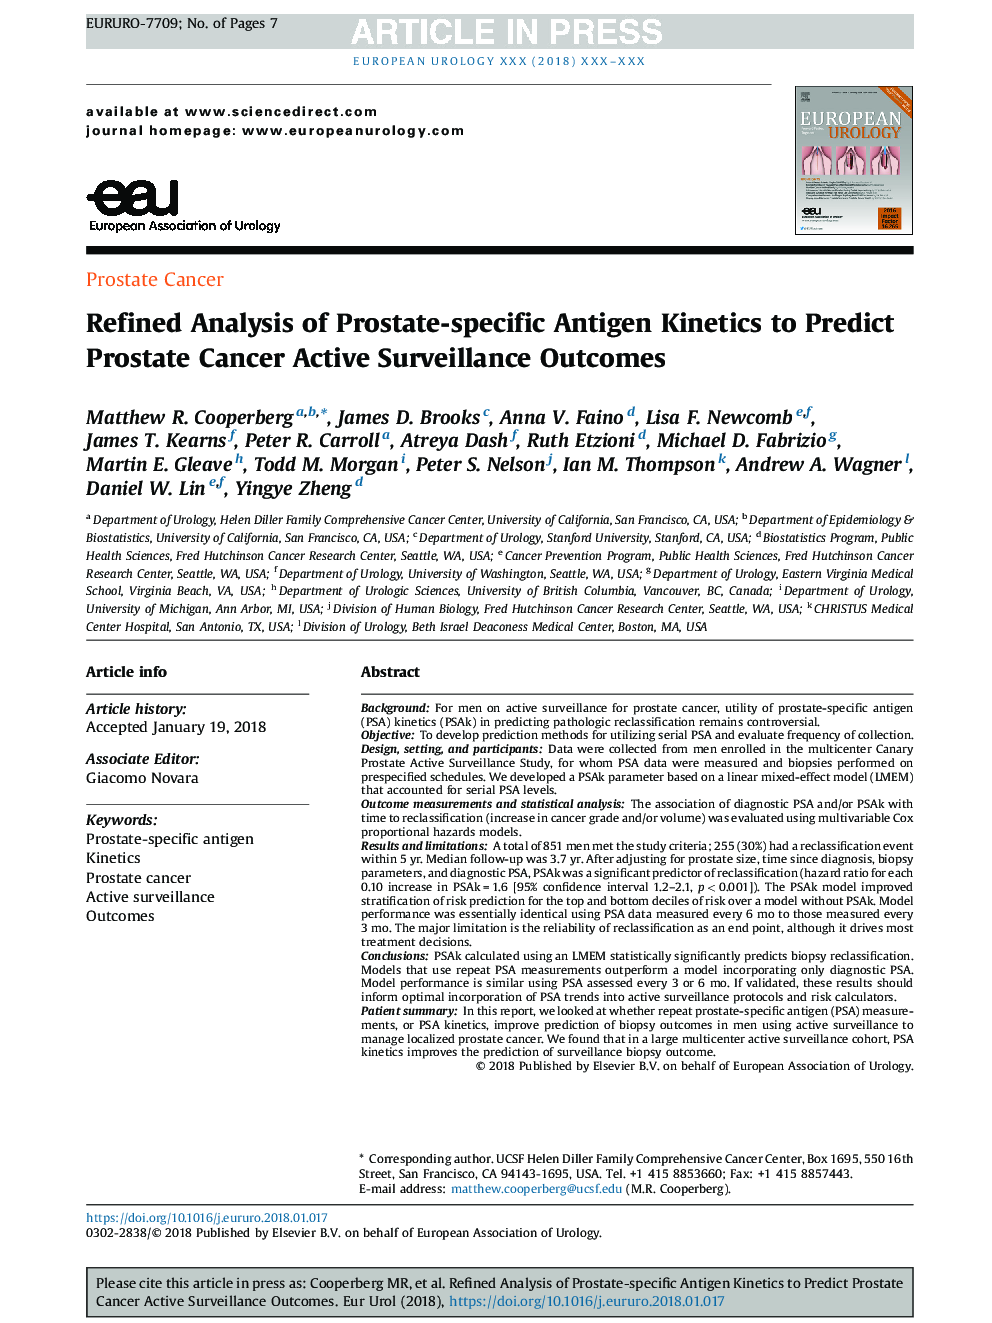 تجزیه و تحلیل دقیق از جنبش های آنتی ژن خاص پروستات برای پیش بینی نتایج سرطان پروستات فعال است 